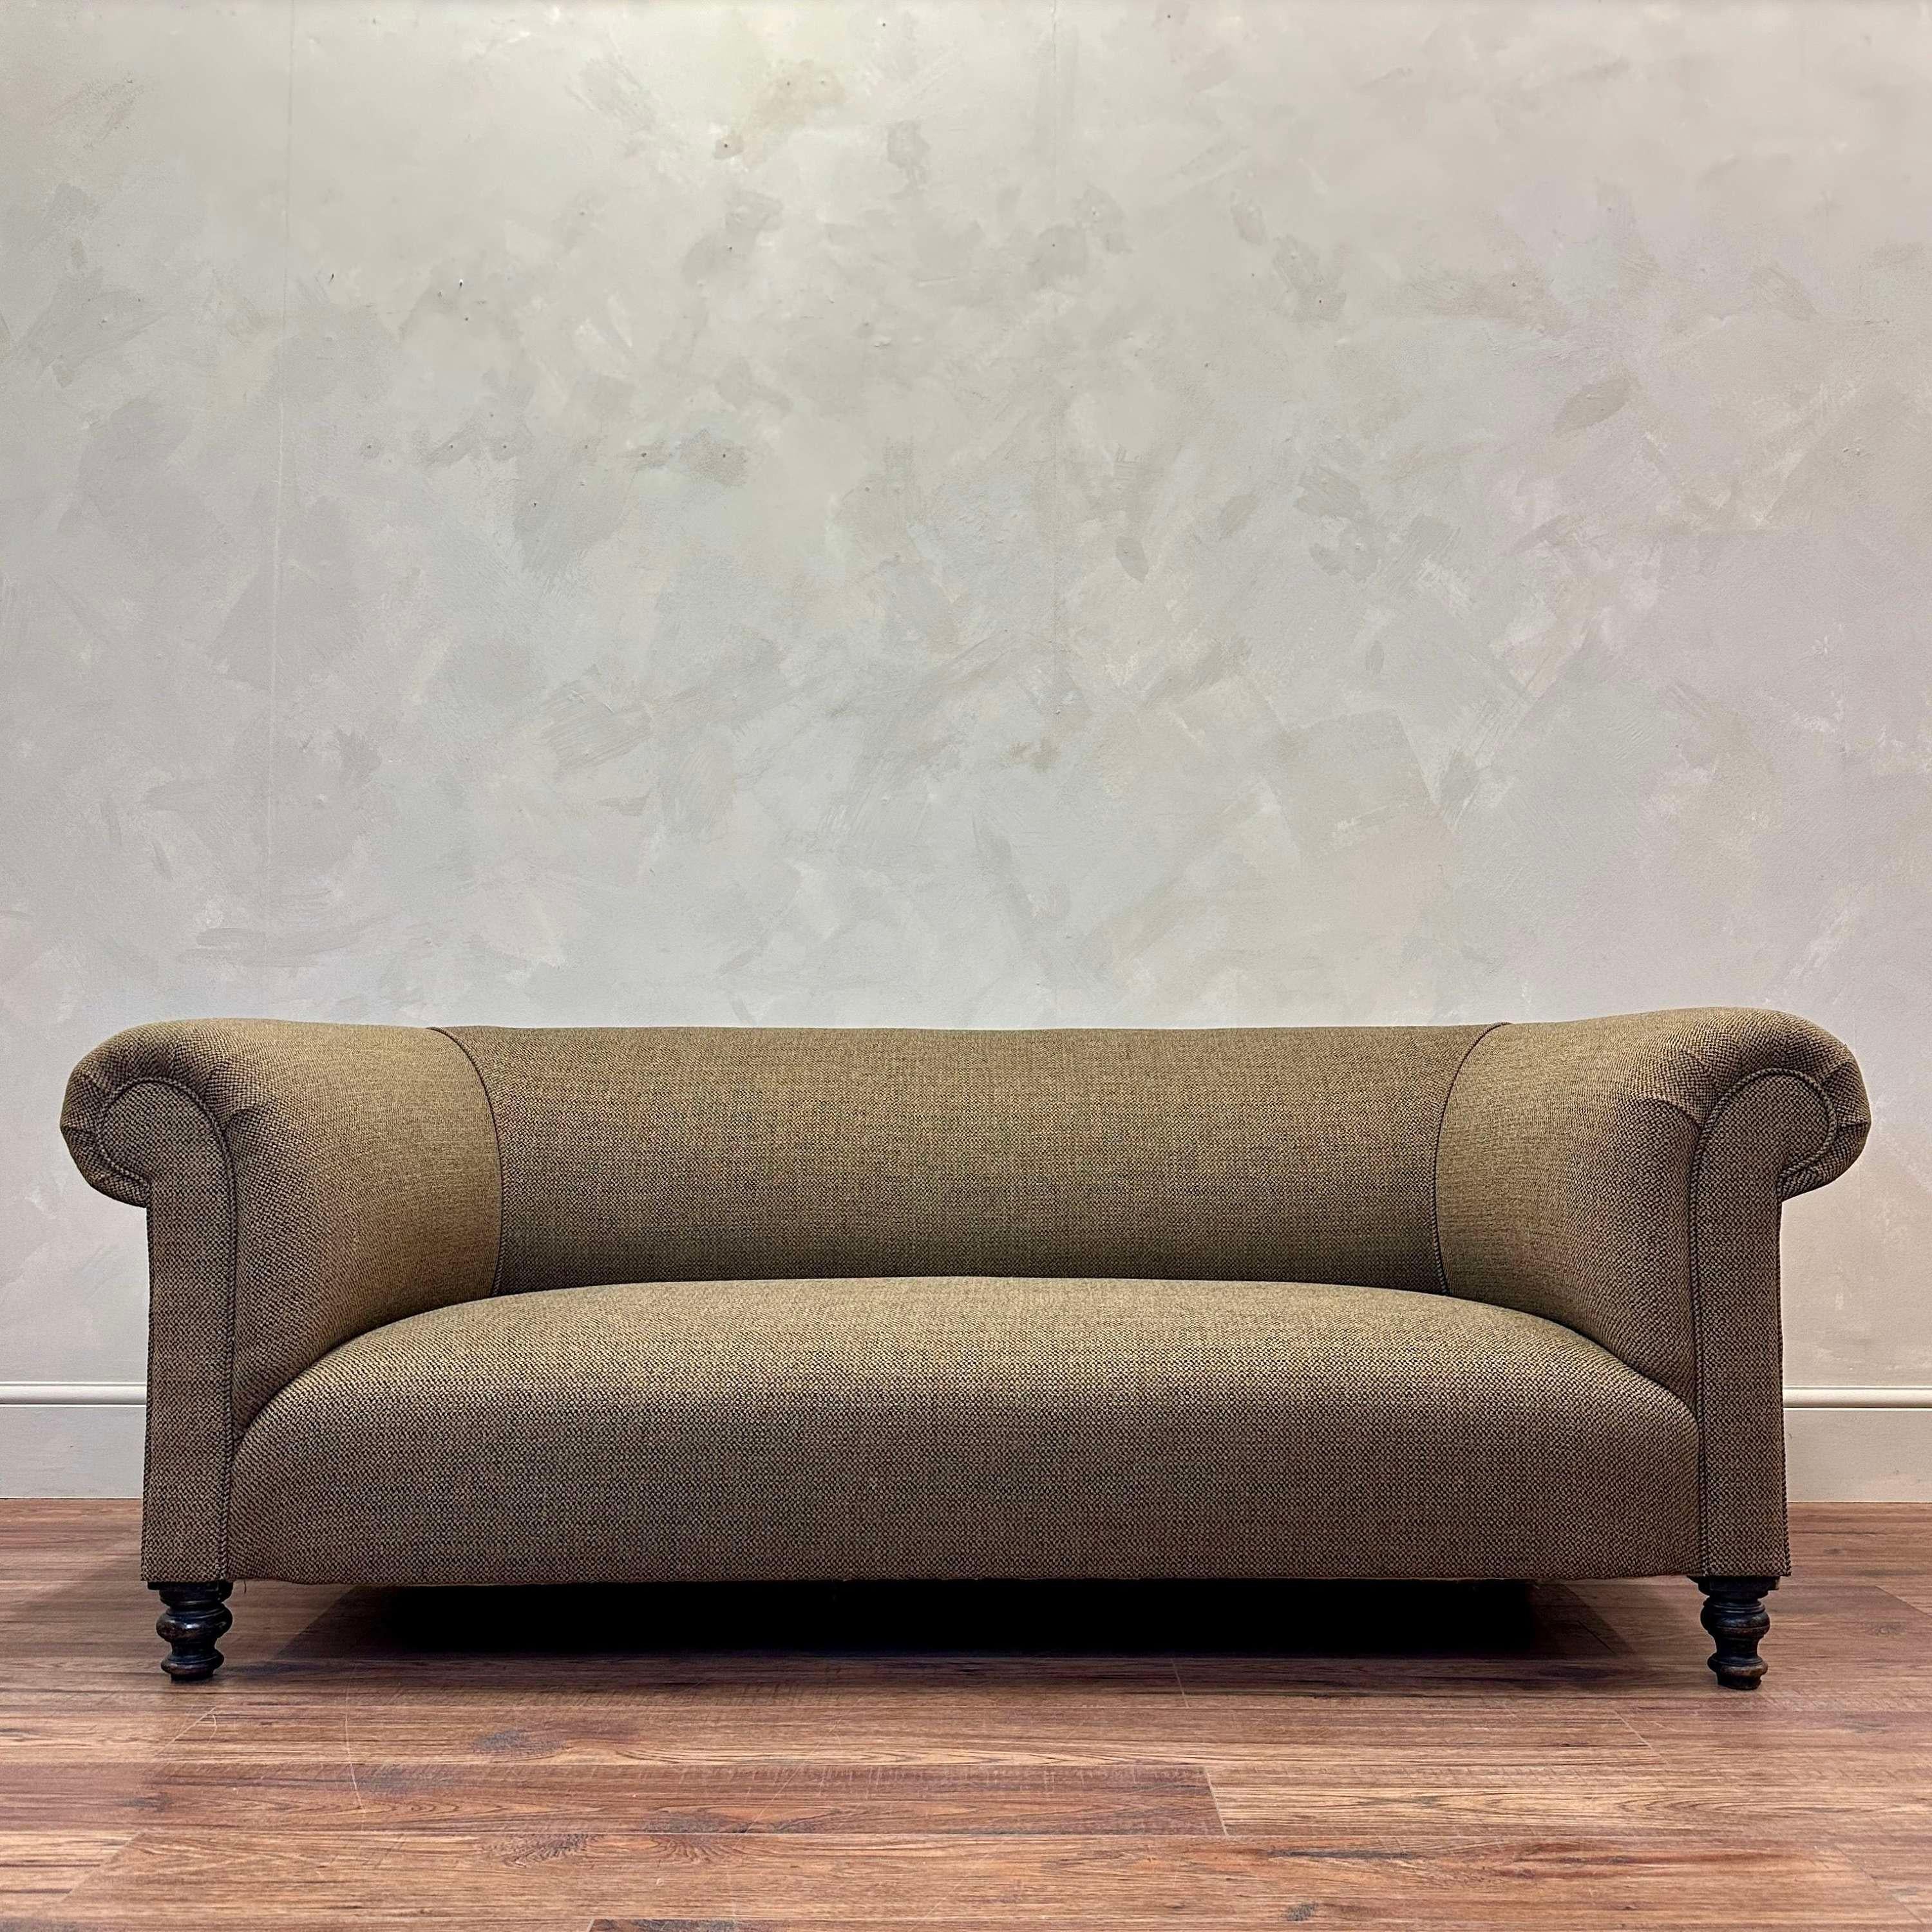 Englisches gepolstertes Sofa aus dem 19. Jahrhundert (Britisch)